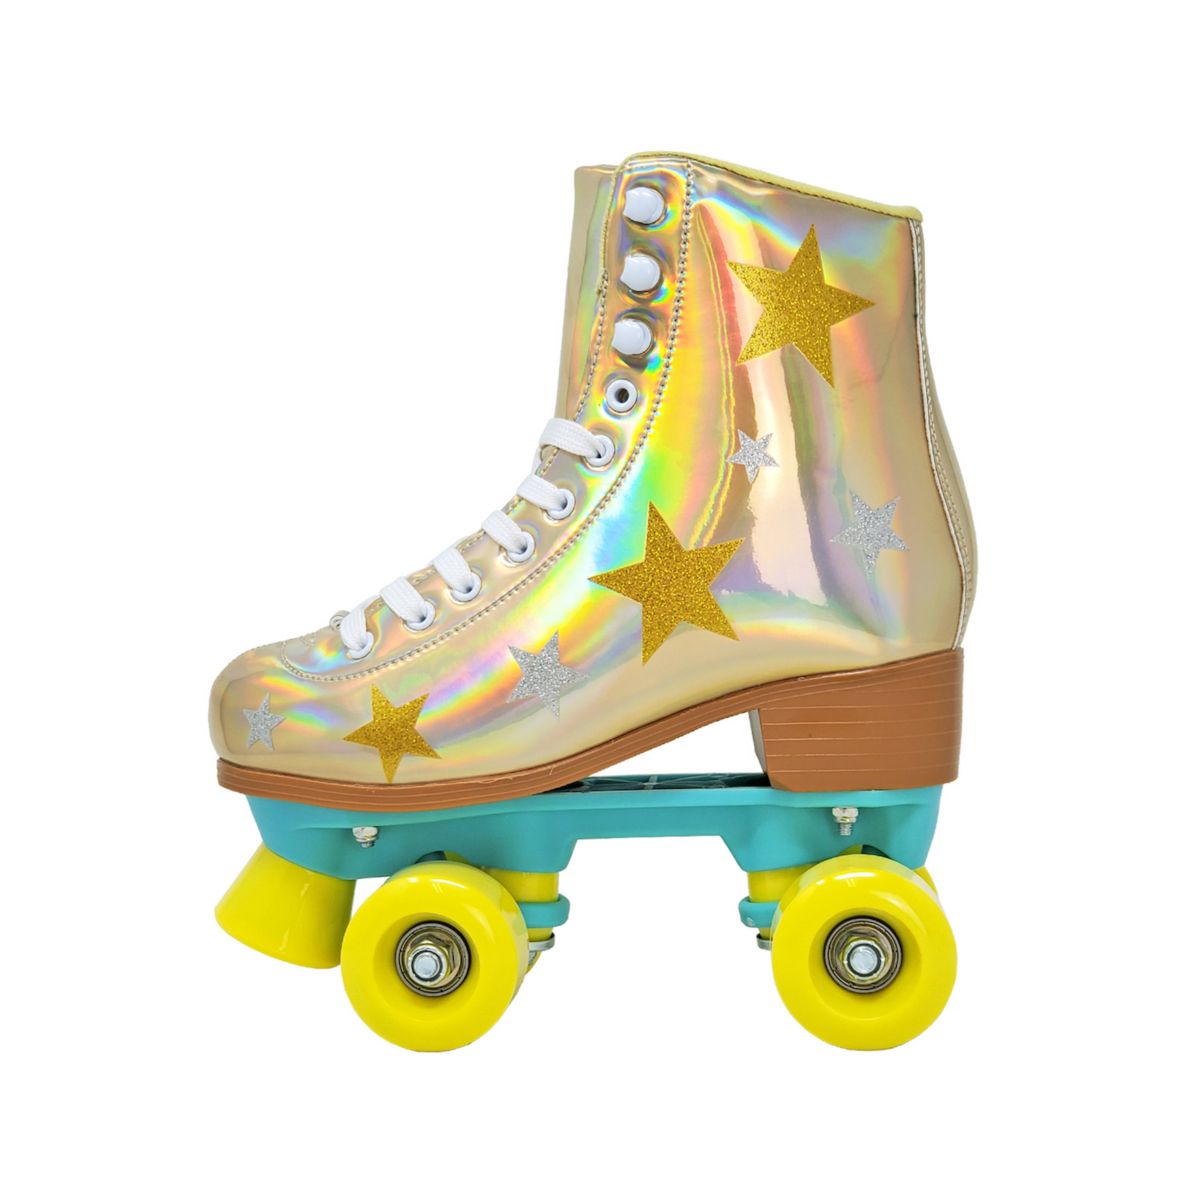 Cosmic Skates Betty-30 Gold Stars Роликовые коньки для девочек Cosmic Skates